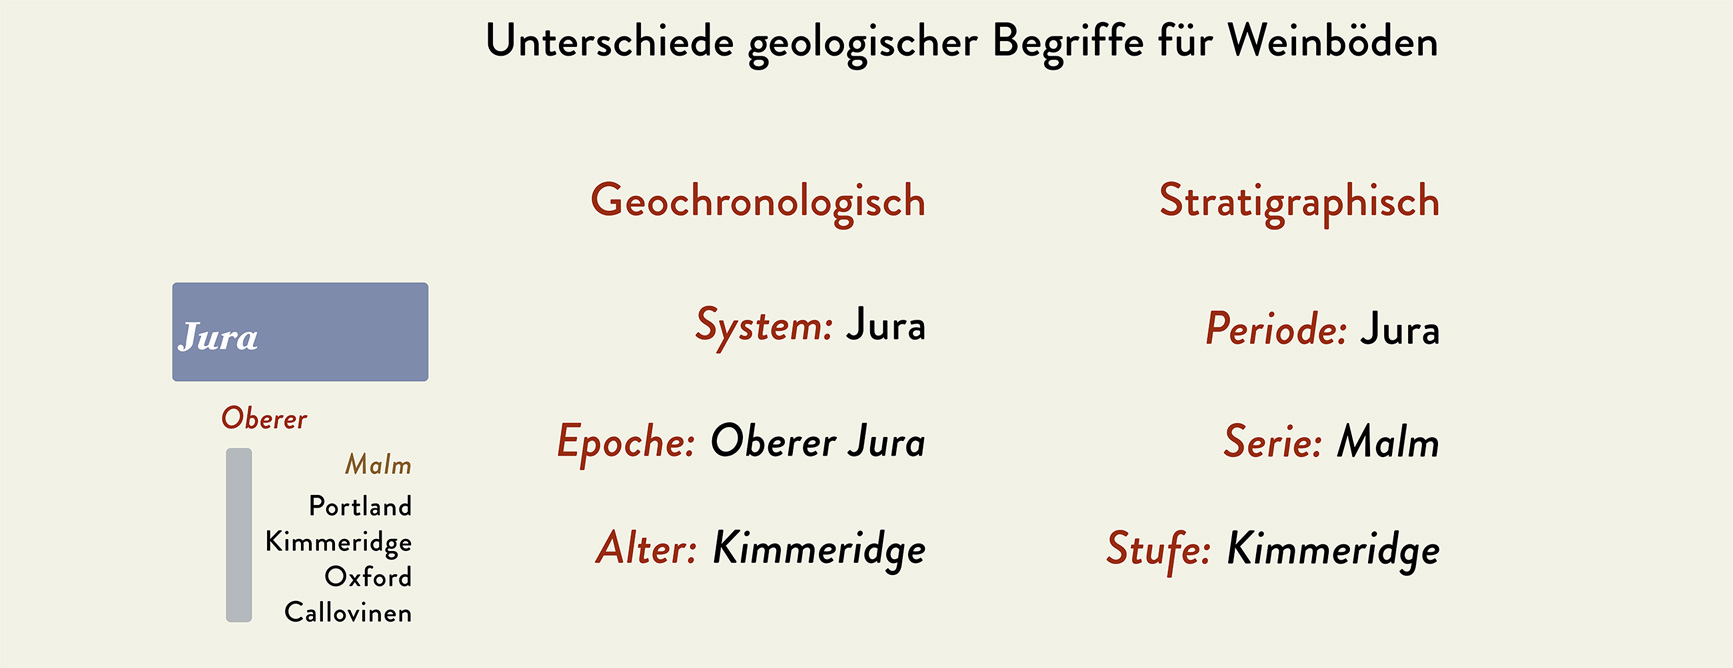 Geochronologische Begriffe